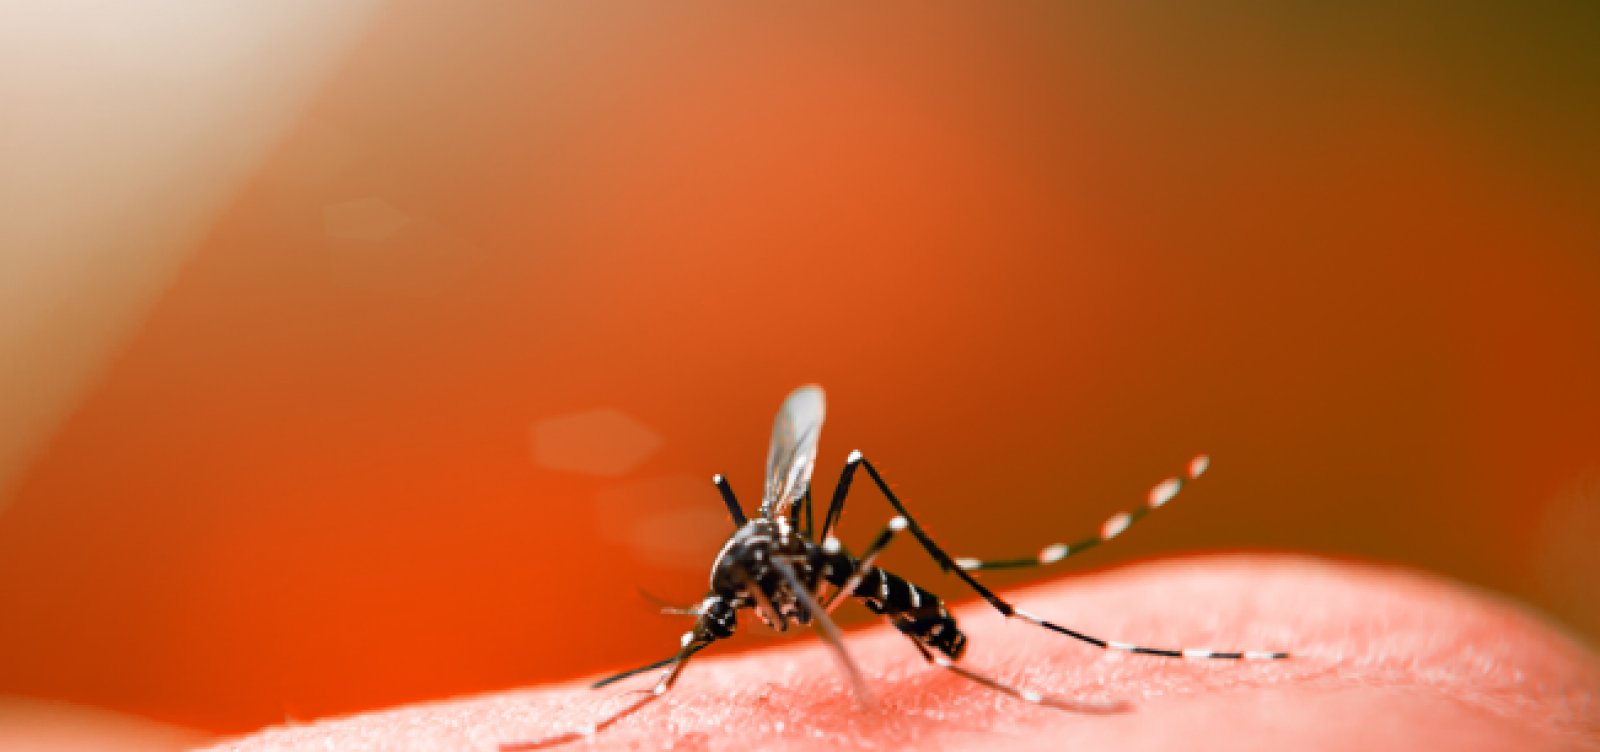  Salvador tem aumento de 156% nos casos de dengue